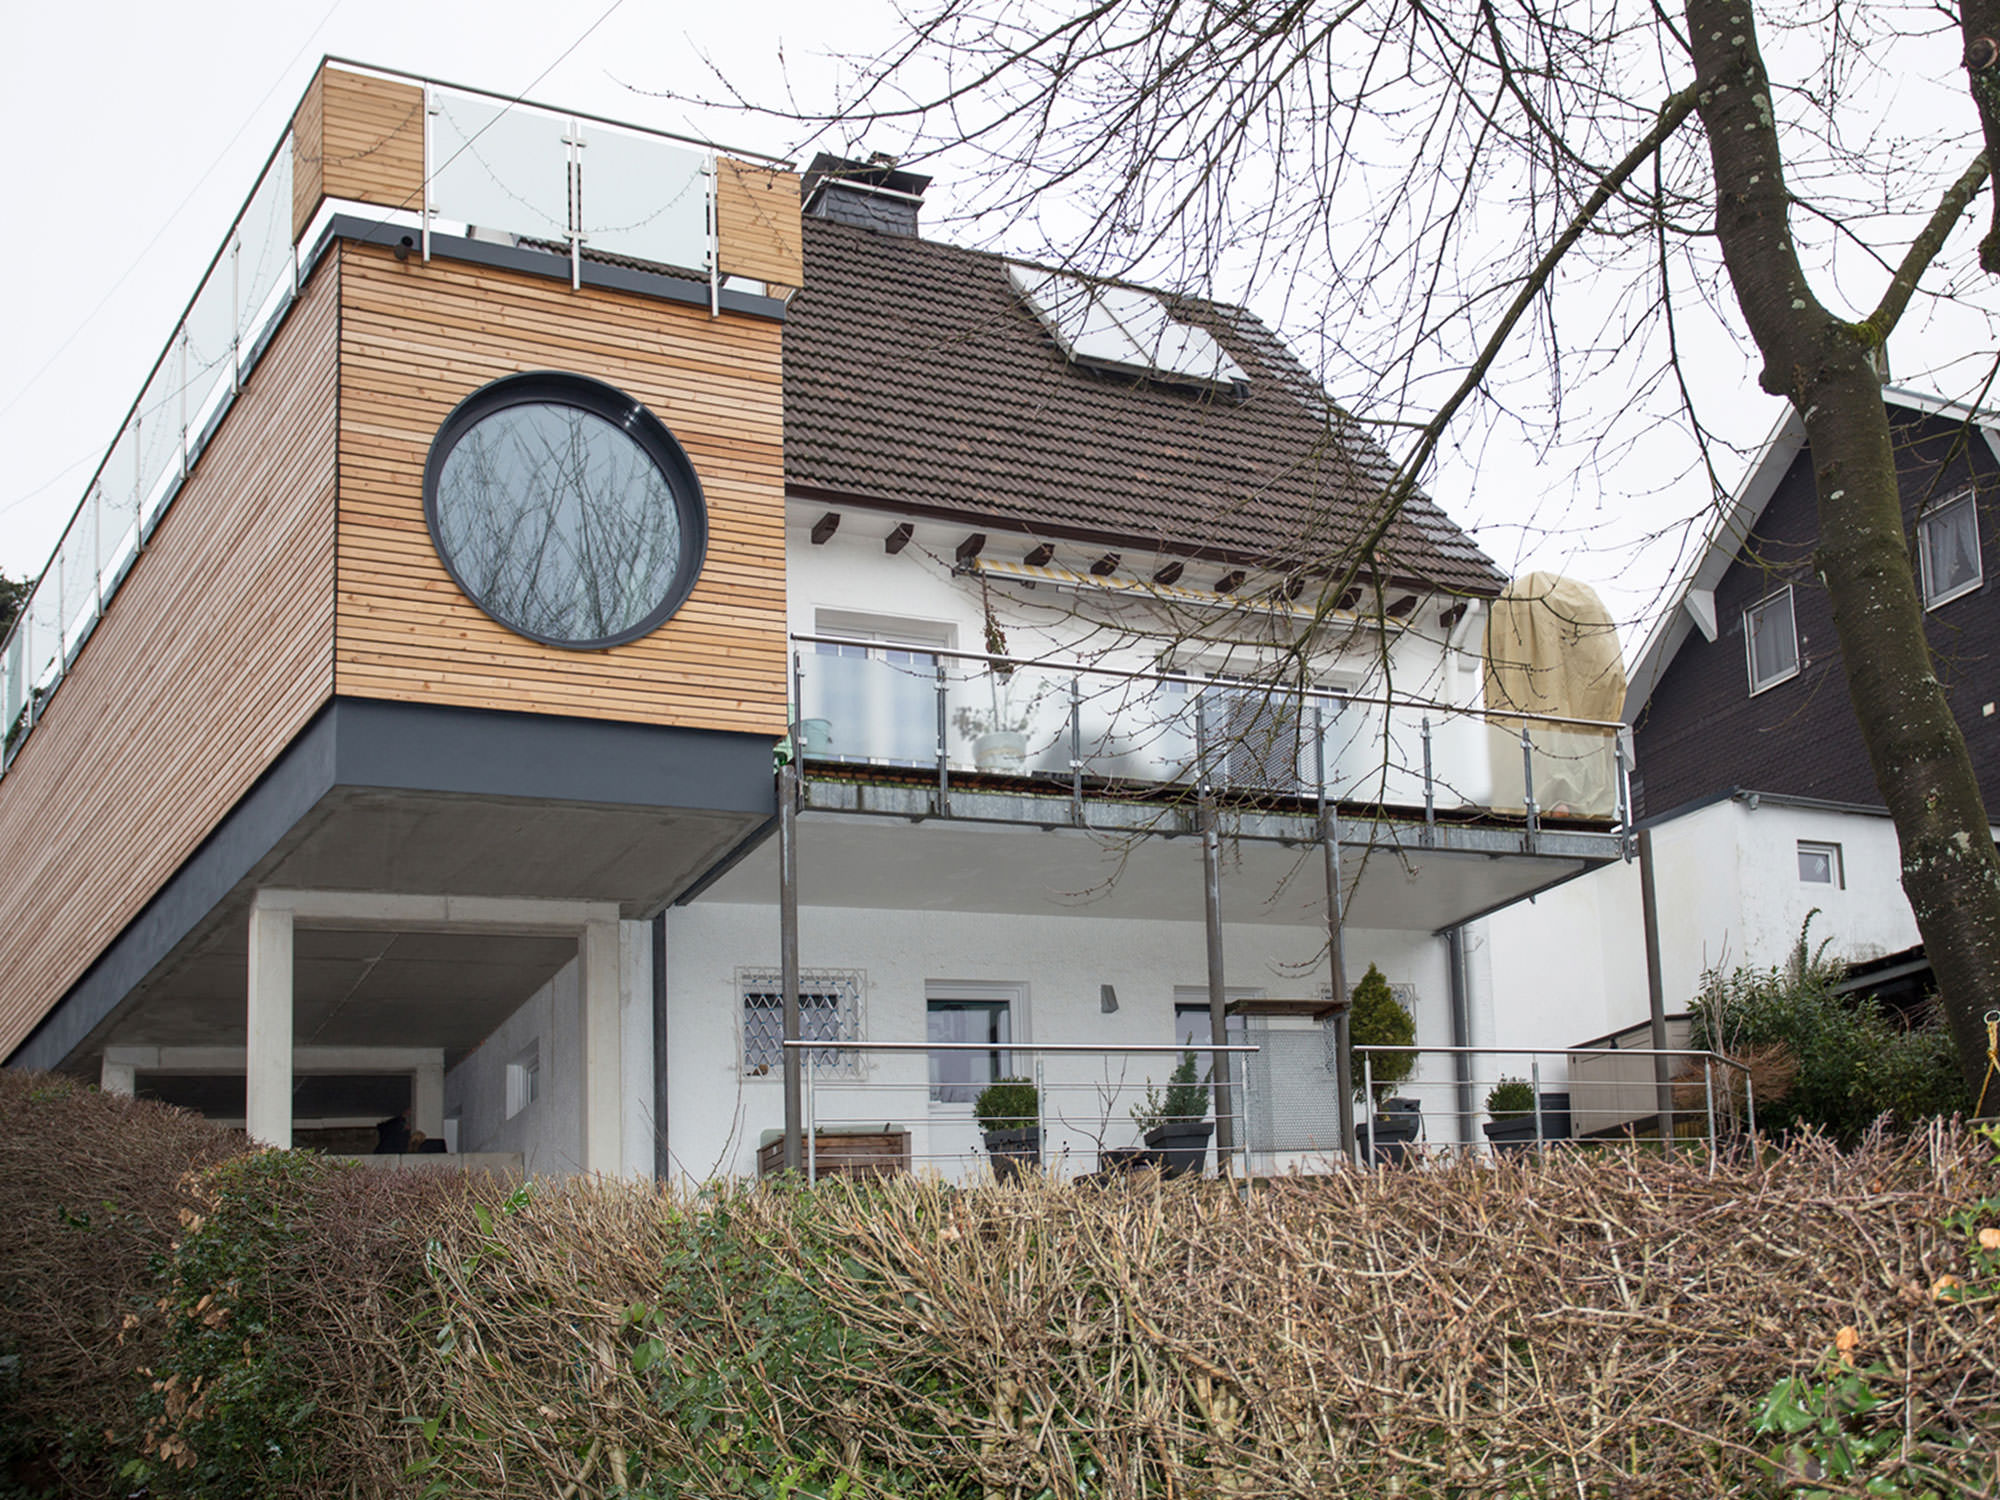 Anbau, Einfamilienhaus Haus L, Wuppertal - ah-architektur.de | Alisic-Haverkamp – Wir verfolgen das Ziel, funktionelle, kostenbewusste und ambitioniert gestaltete Architektur zu schaffen, die einen ah-Effekt auslöst.